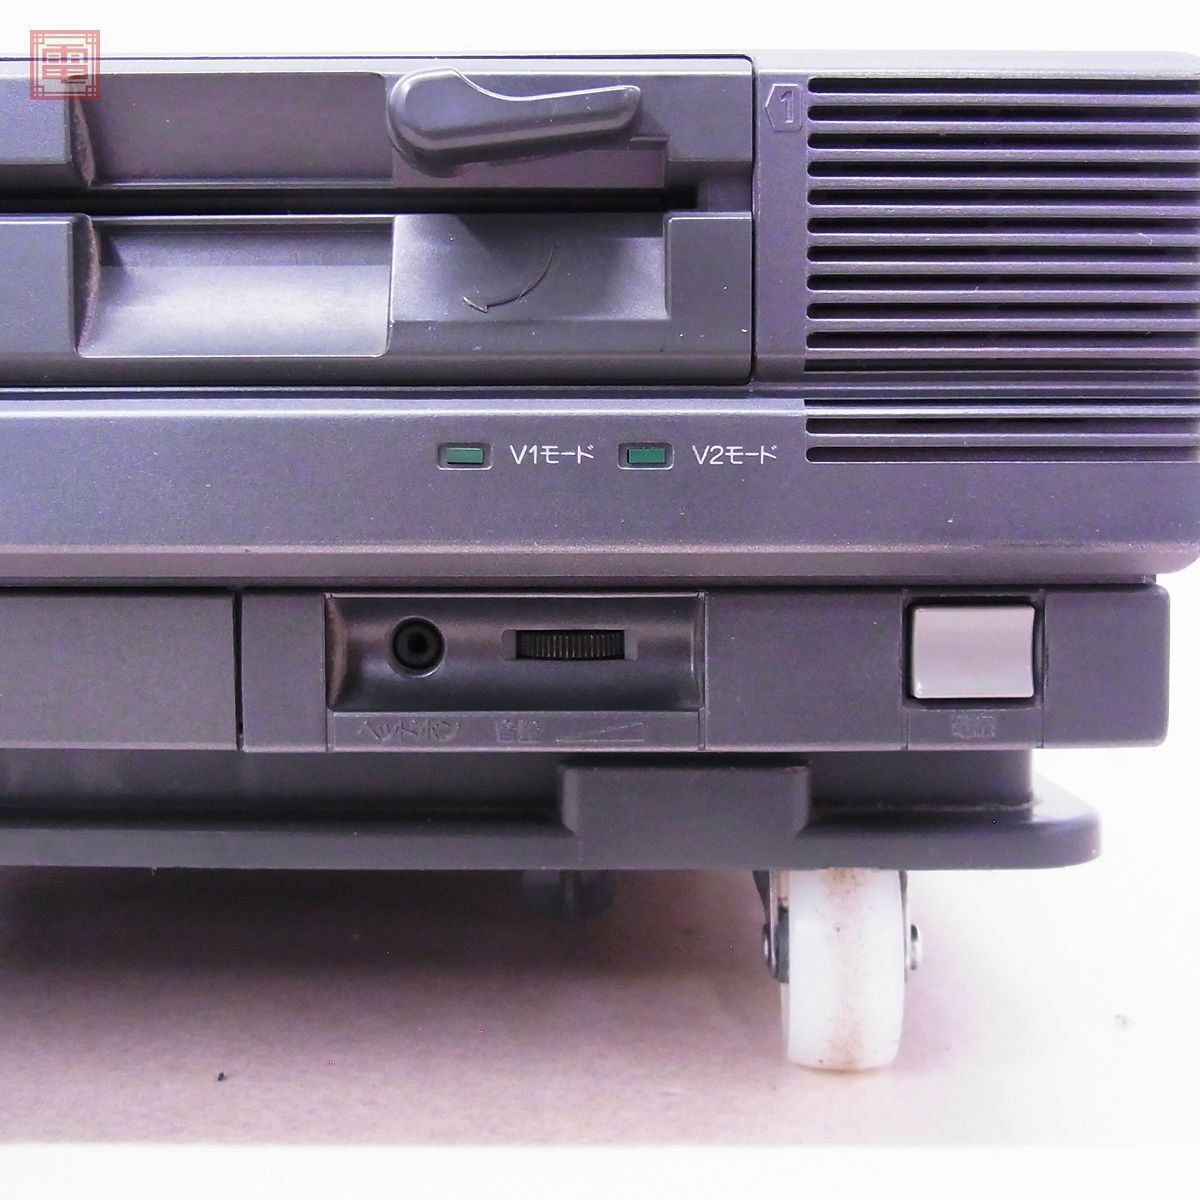 1 иен ~ рабочий товар NEC PC-8801FH корпус черный модель FD* в подарок soft есть Япония электрический [40